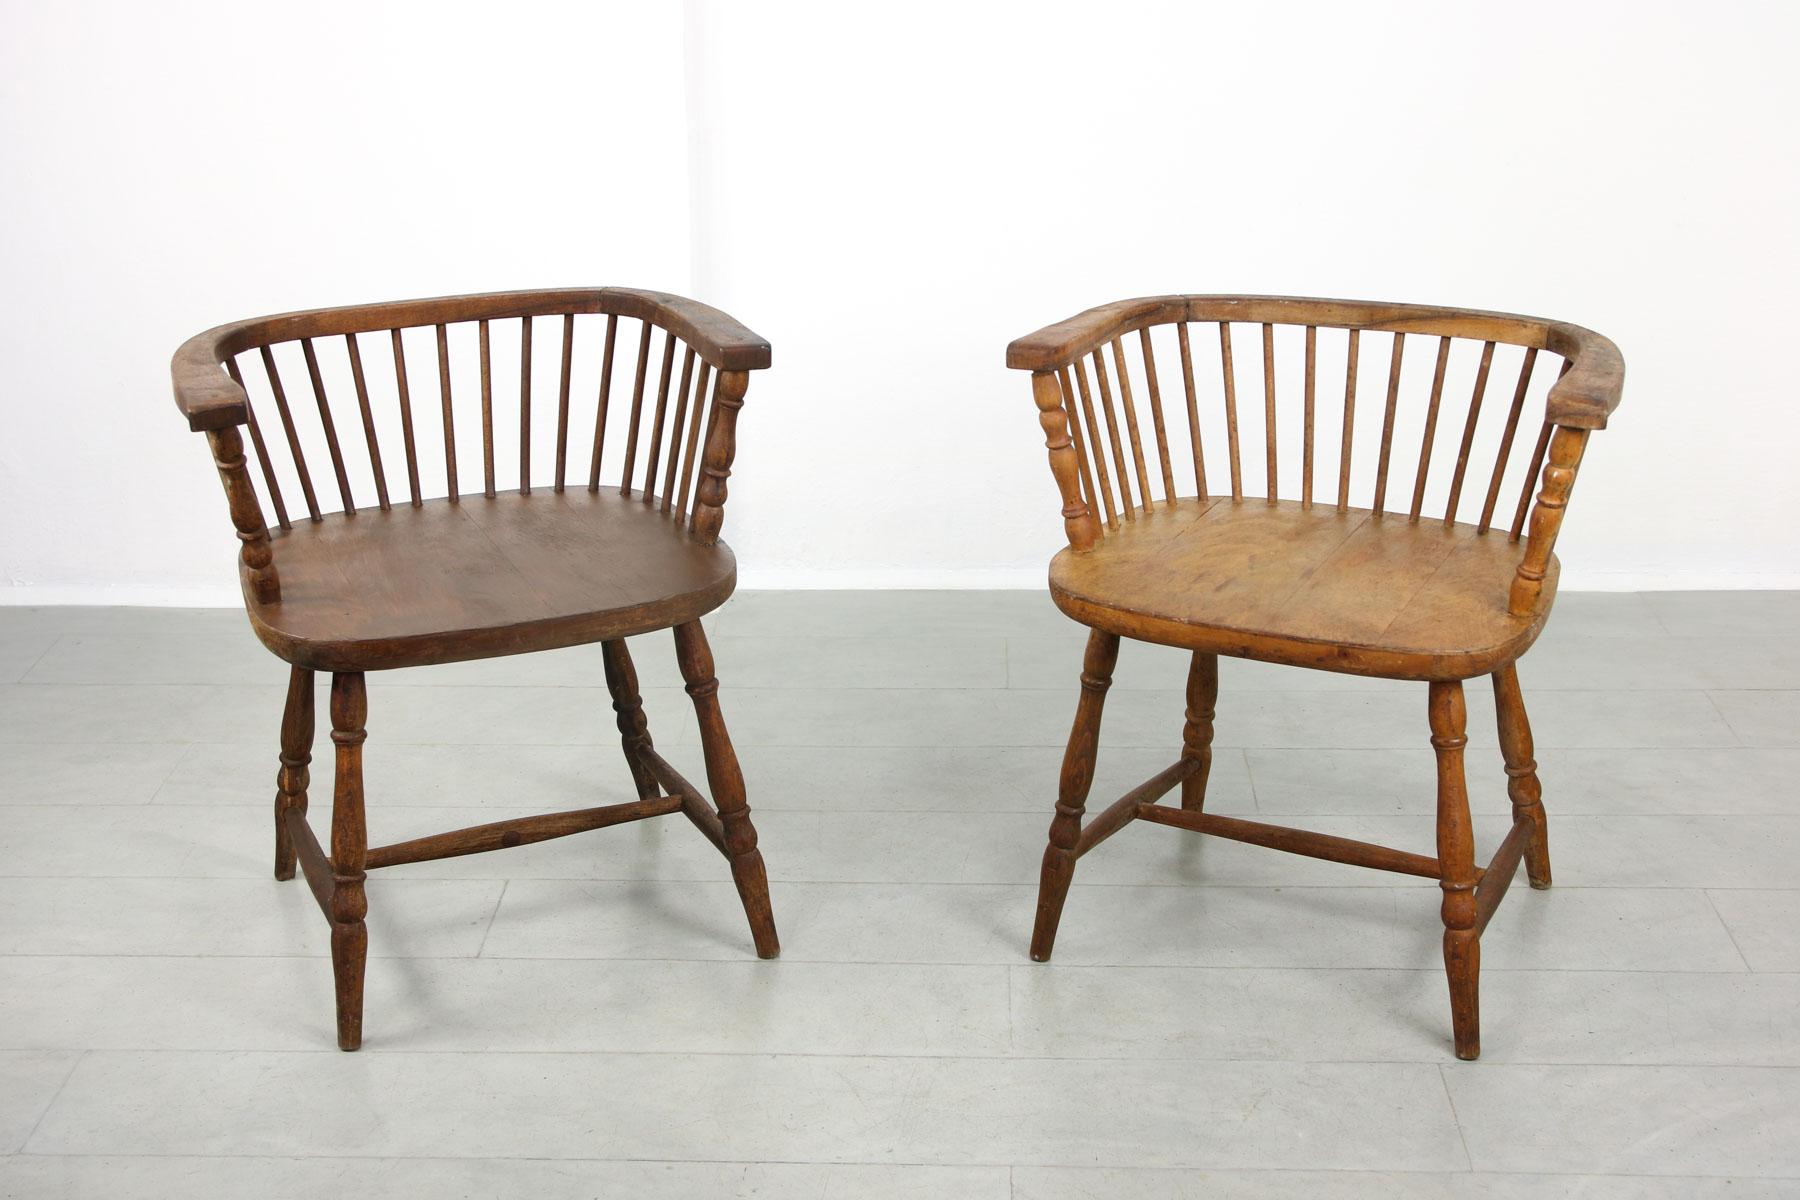 Rares chaises Windsor à dossier bas datant du XIXe siècle, trouvées comme accessoires dans un ancien théâtre. Modèle identique, une chaise est livrée dans une teinte plus claire et l'autre dans une teinte plus foncée (bois de noyer). Hauteur du